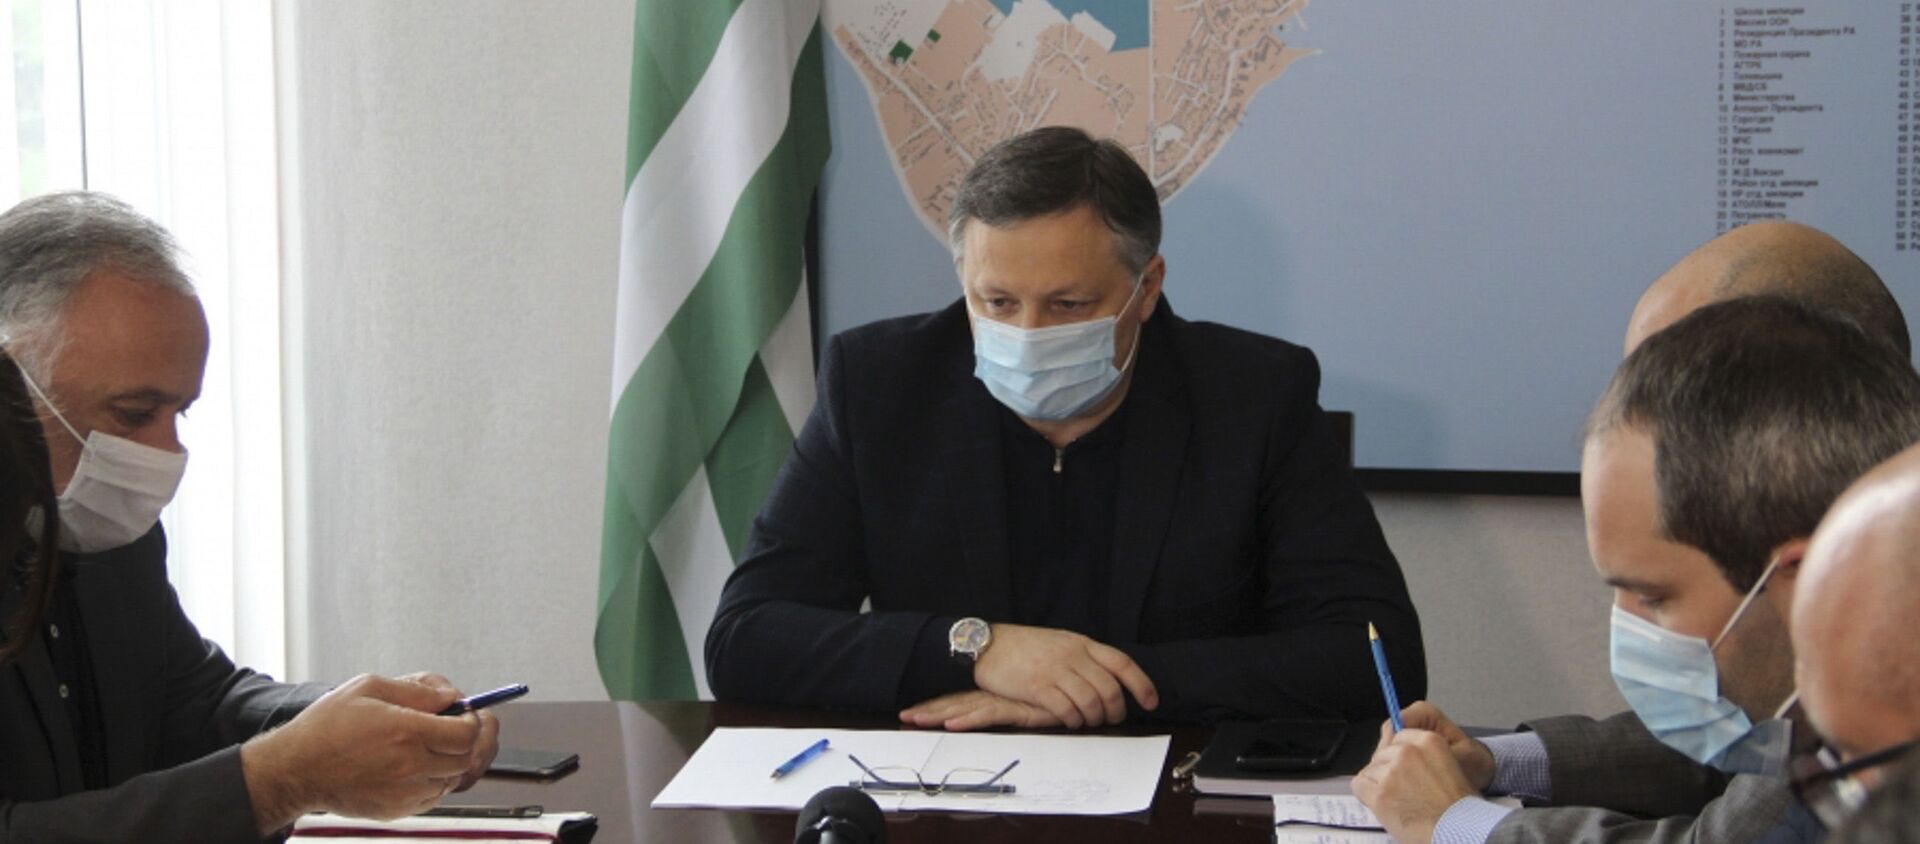 Глава Администрации Сухума подписал распоряжение о систематизации жилищного фонда города Сухум  - Sputnik Абхазия, 1920, 03.06.2020